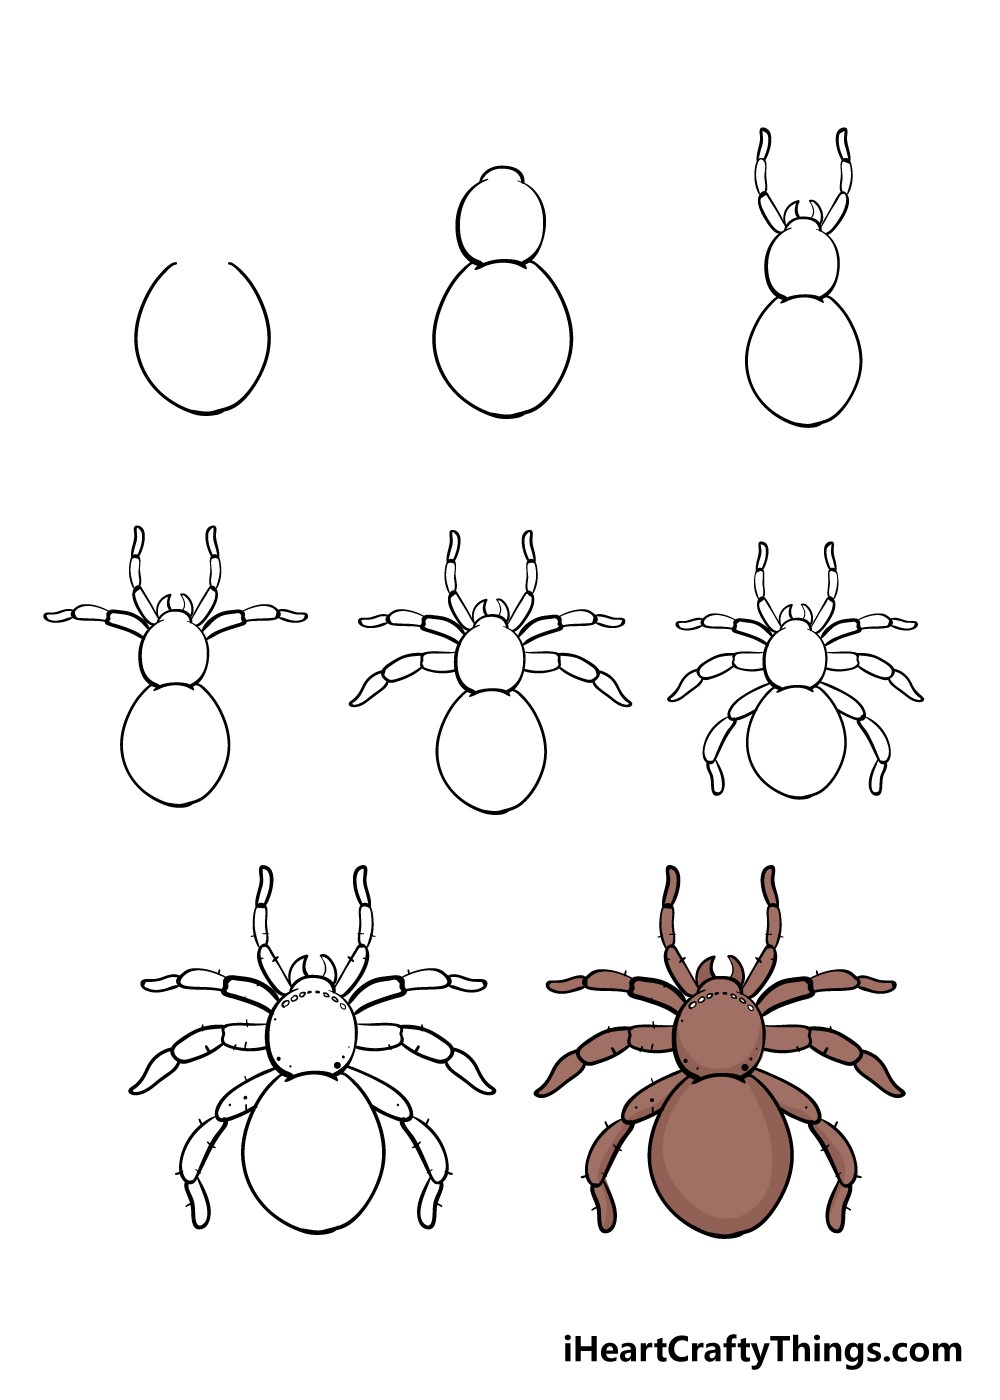 Örümcek çizimi